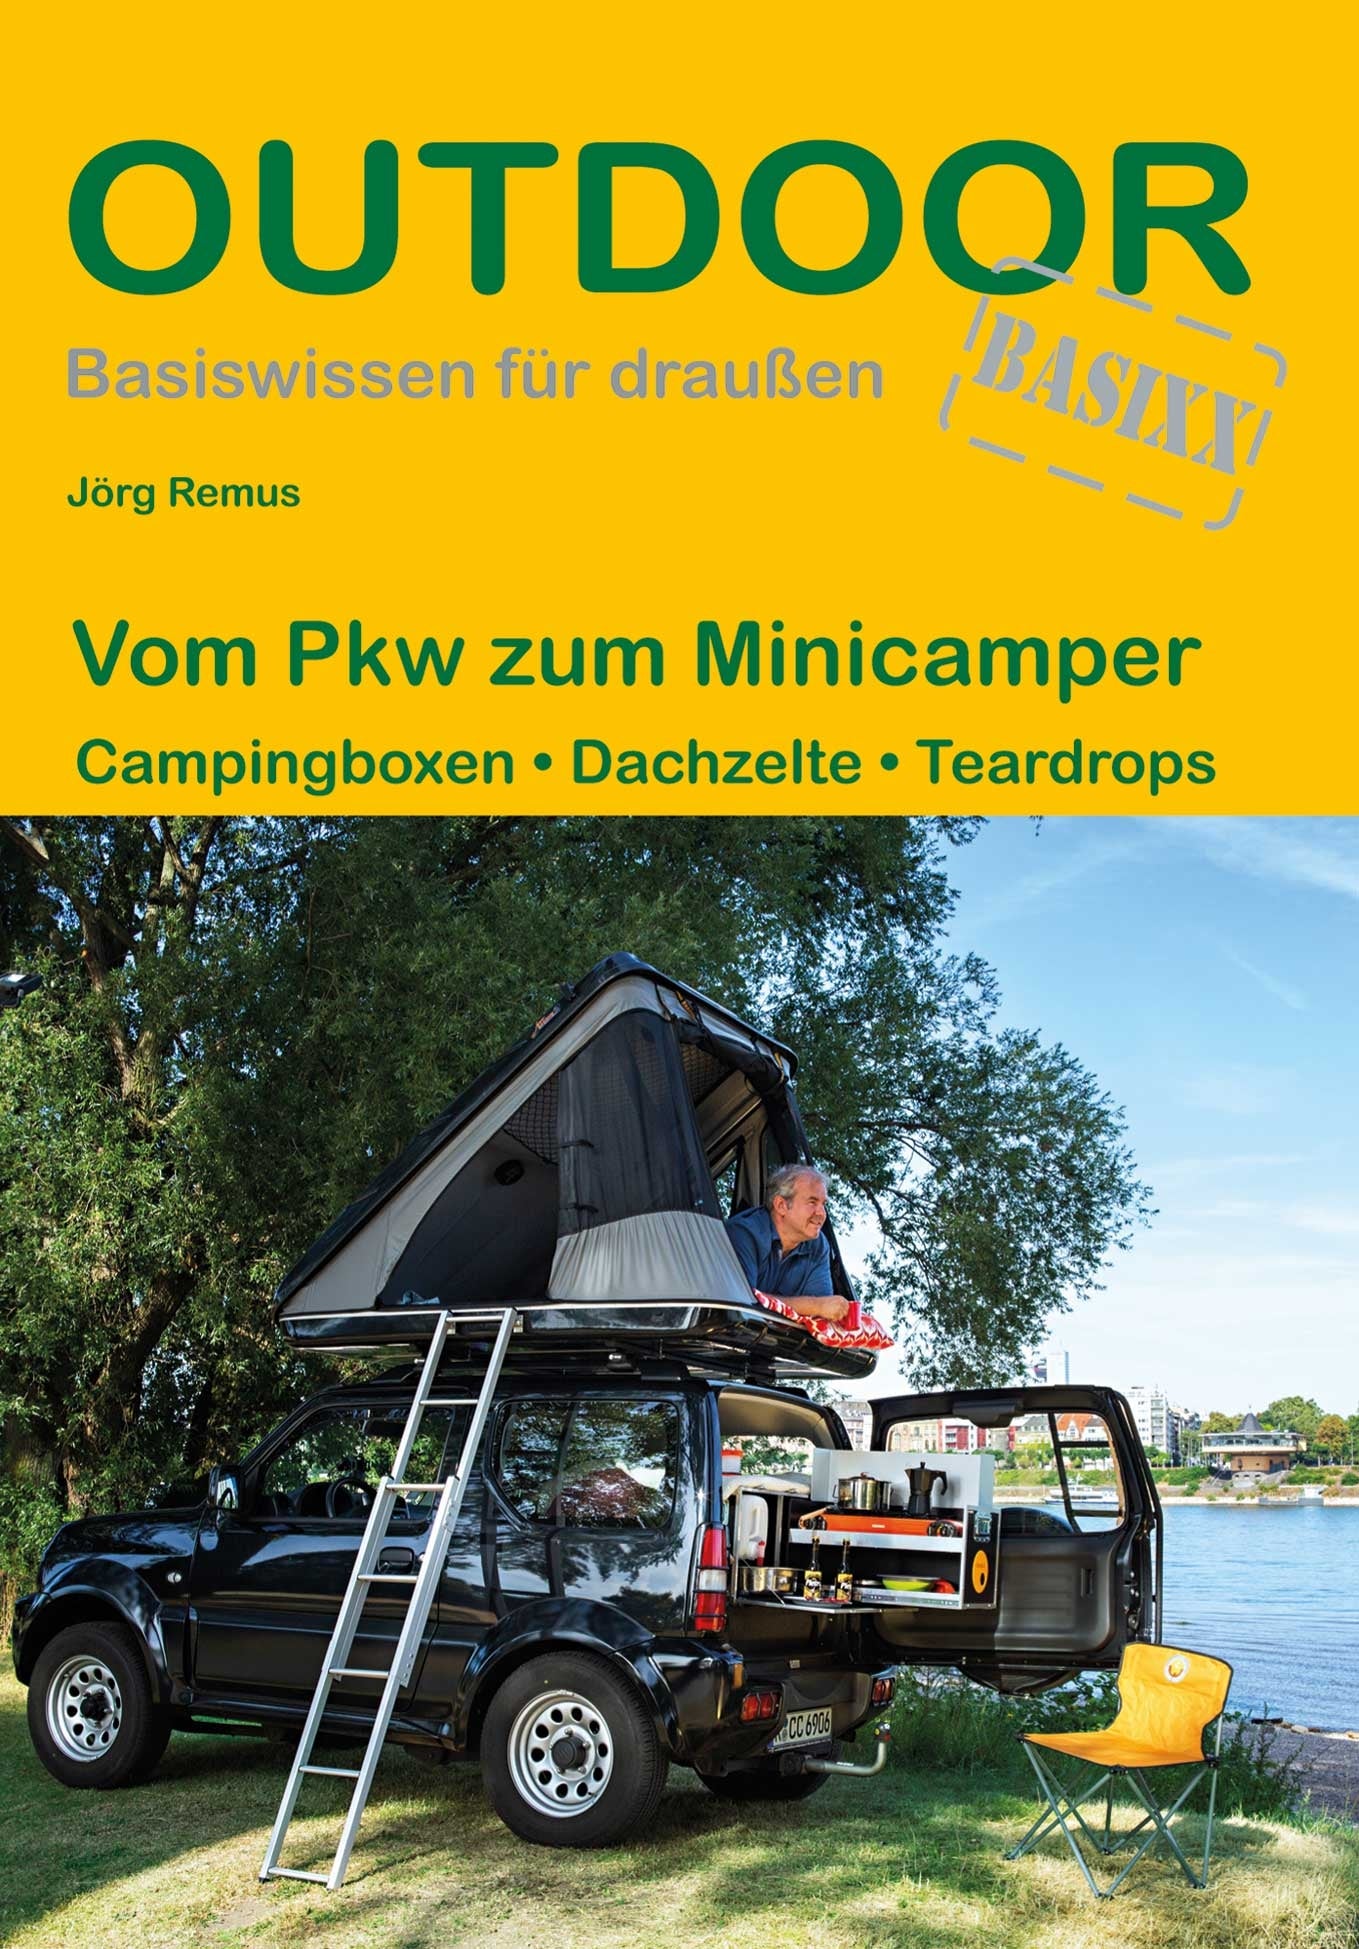 Outdoor Wissen: Vom Pkw zum Minicamper - Campingboxen-Dachzelte-Teardrops (441) 1.A 2019